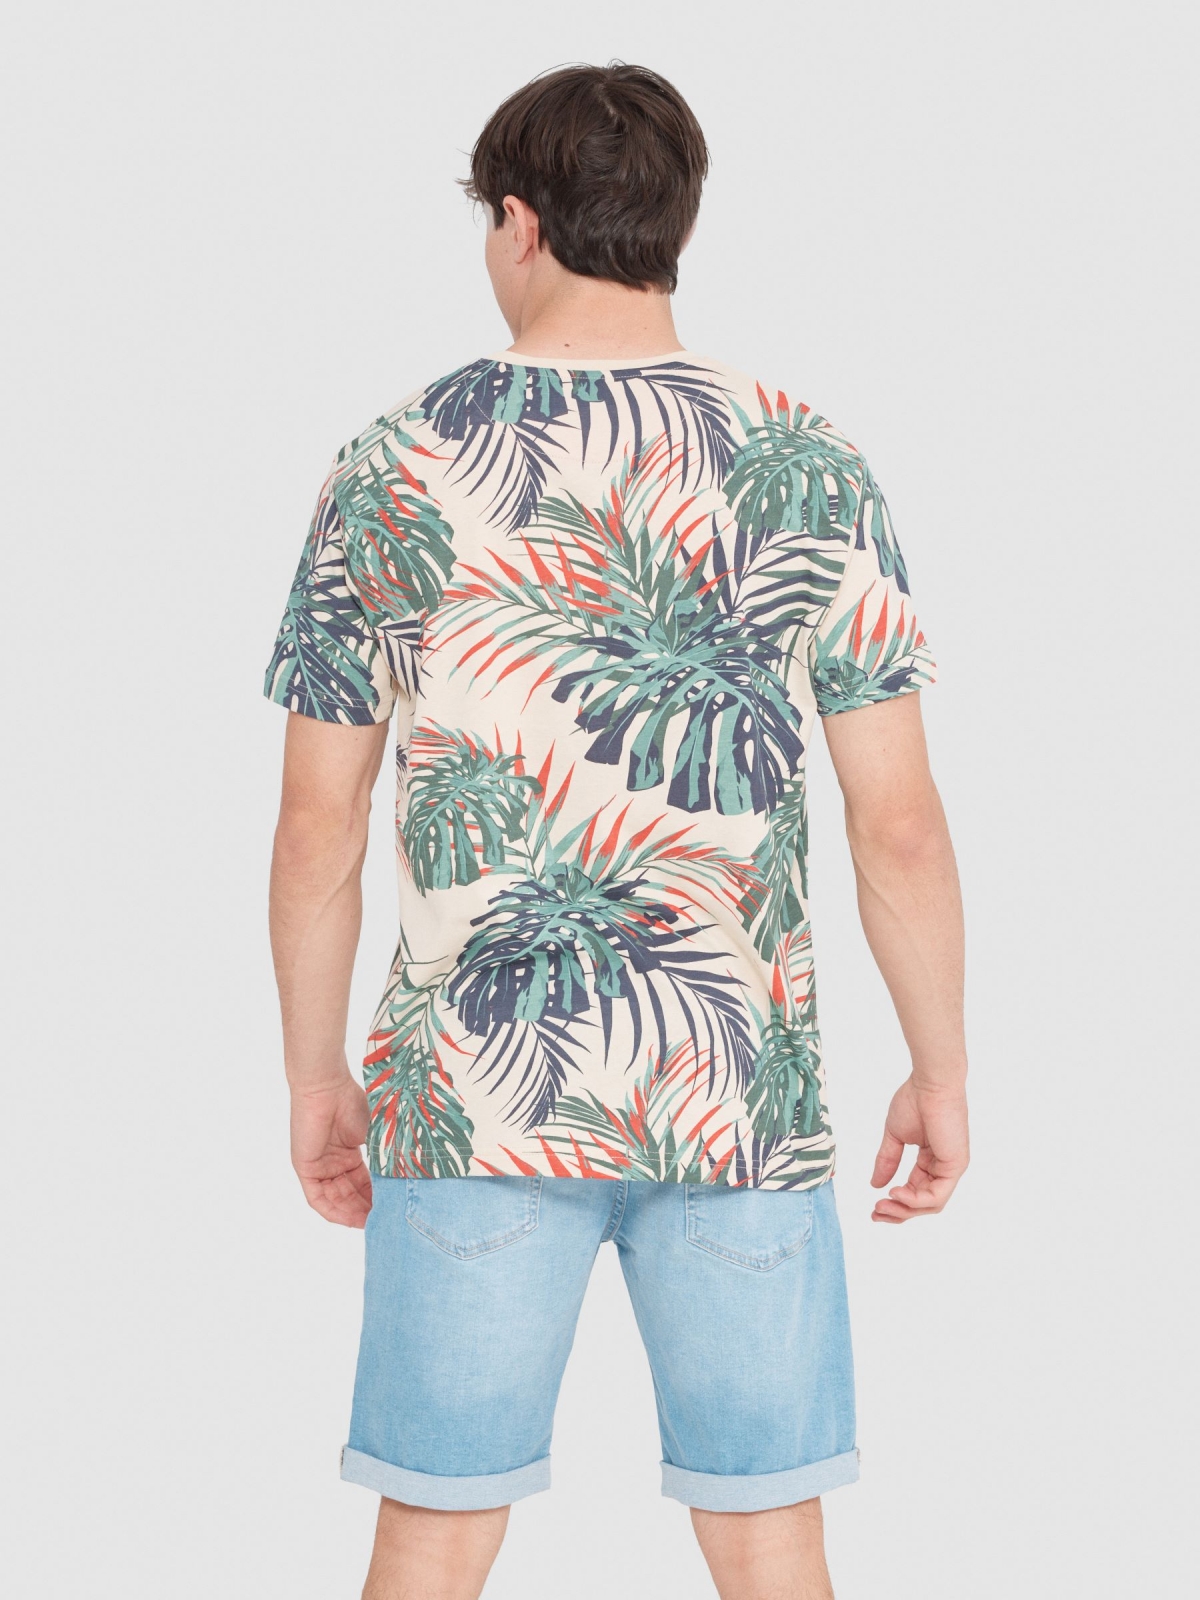 Camiseta tropical hojas arena vista media trasera